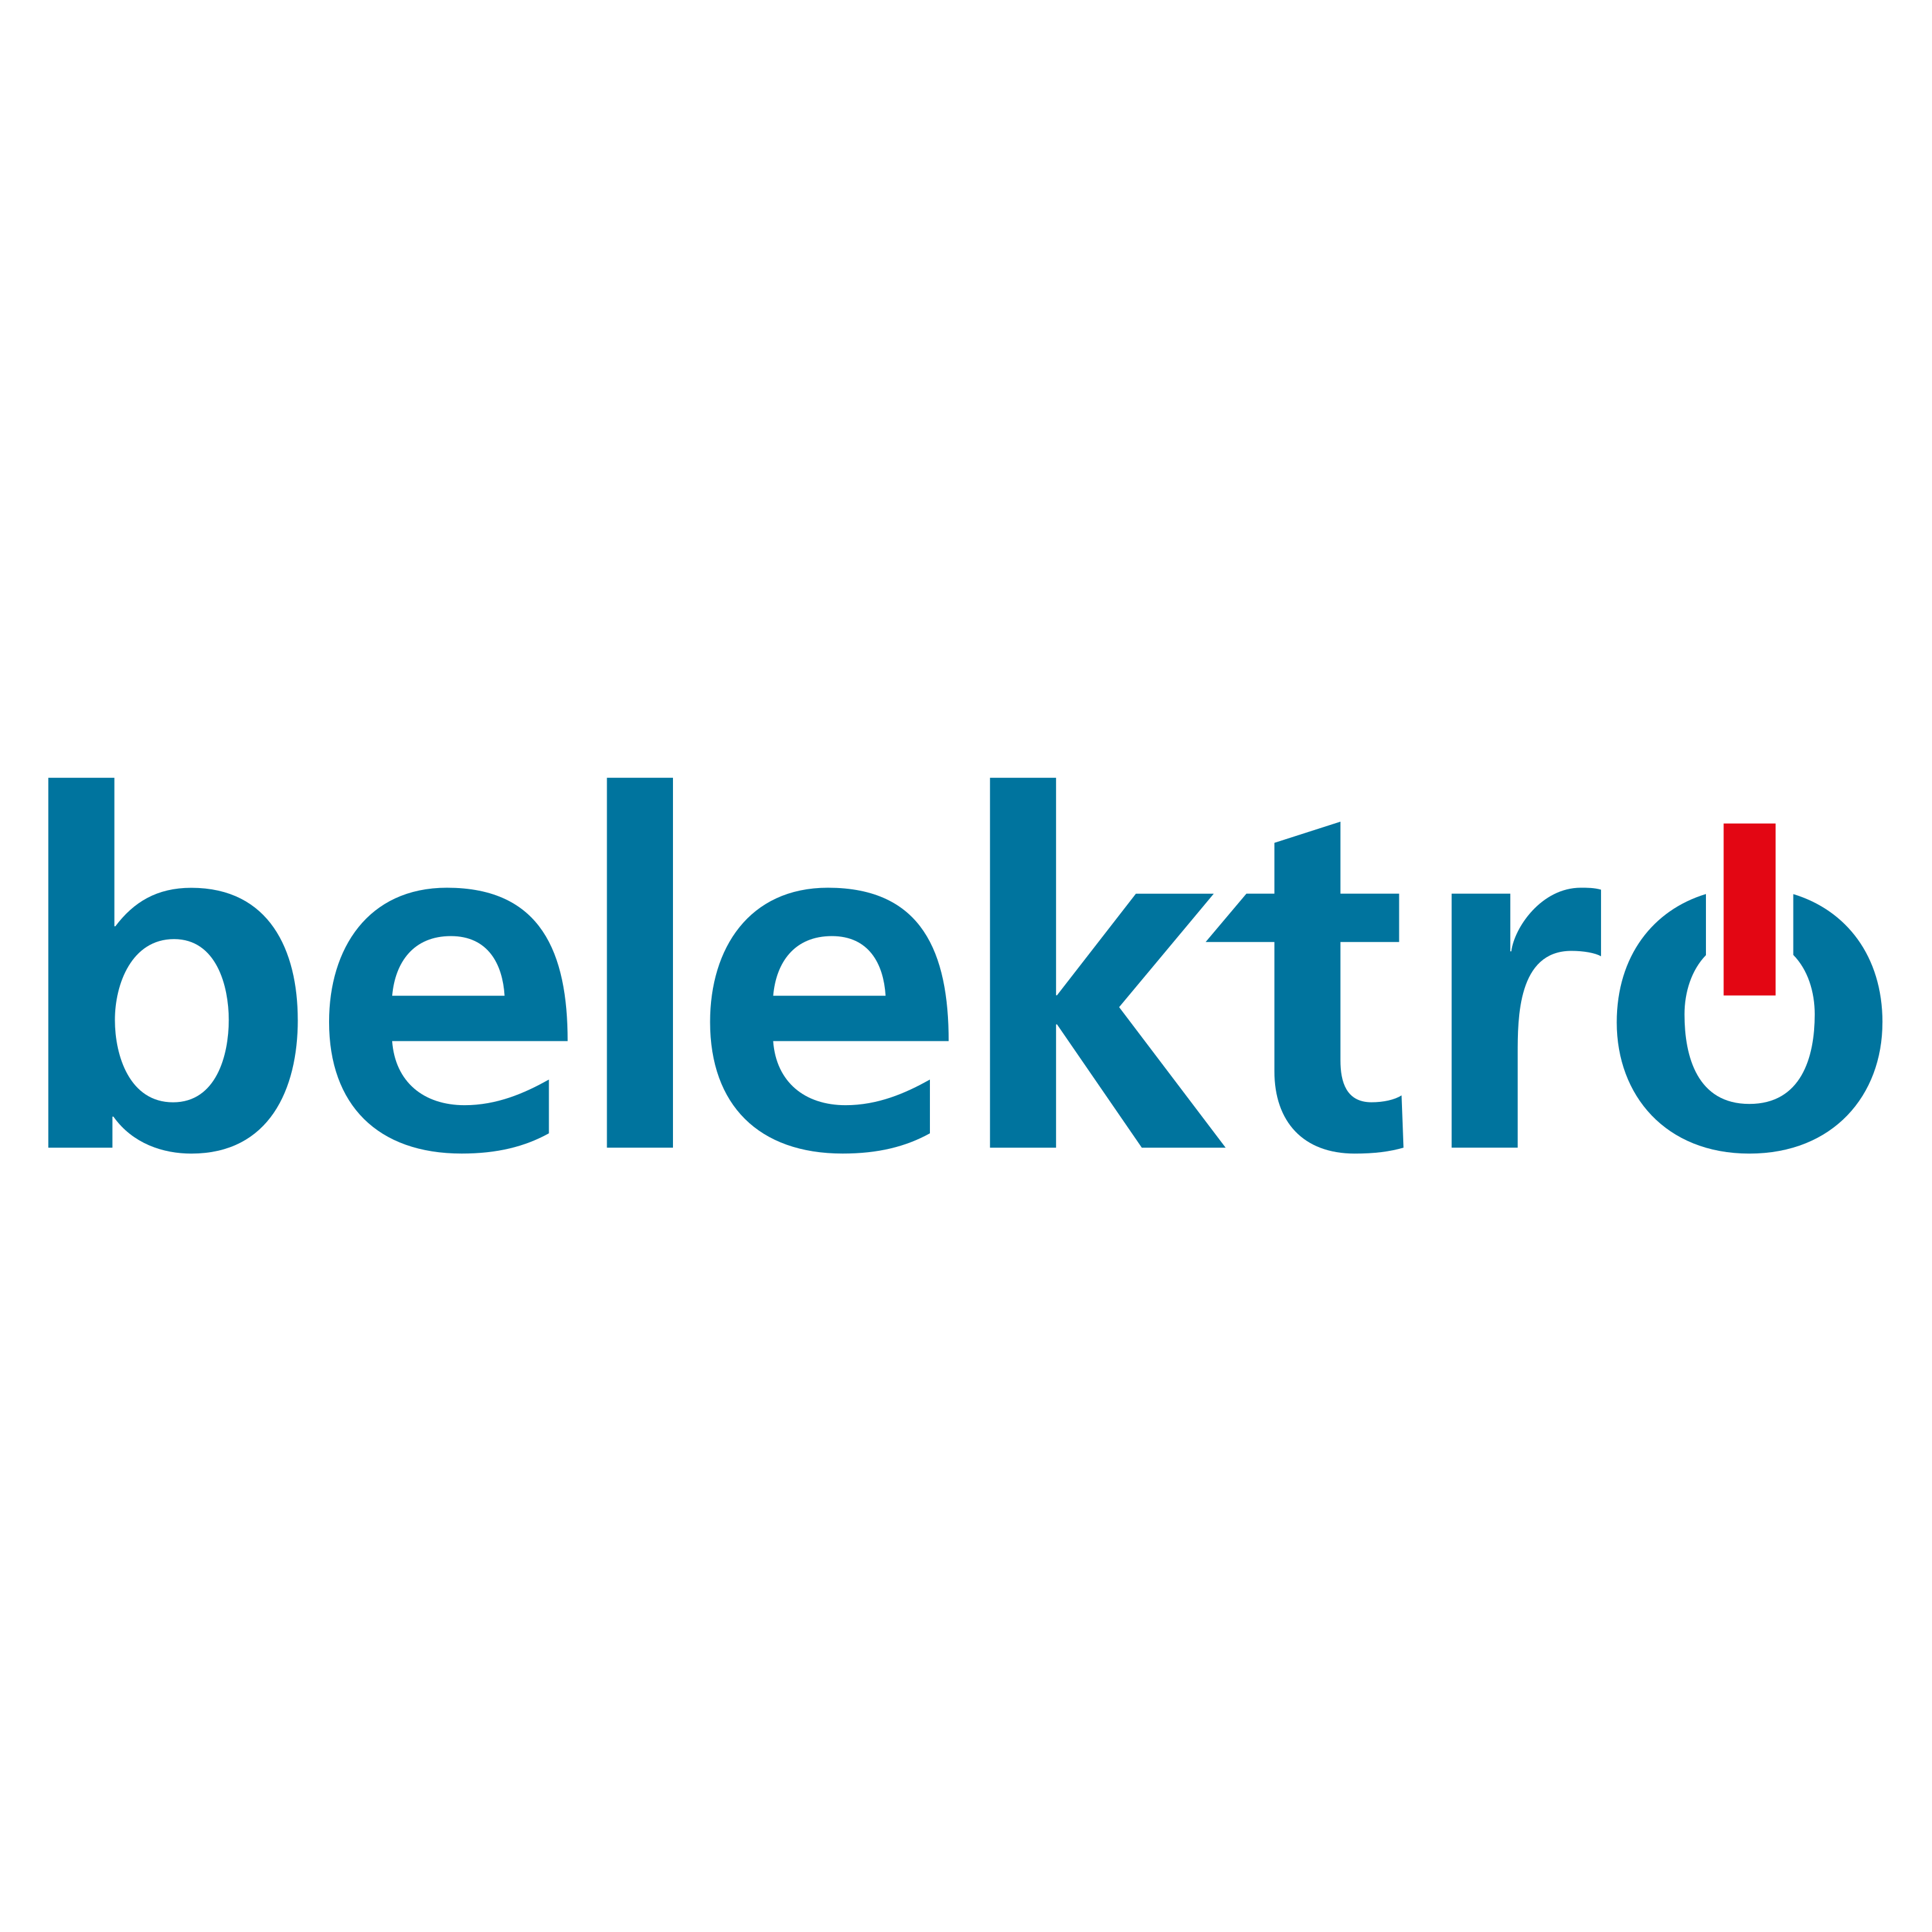 Belektro Logo  Transparent Image